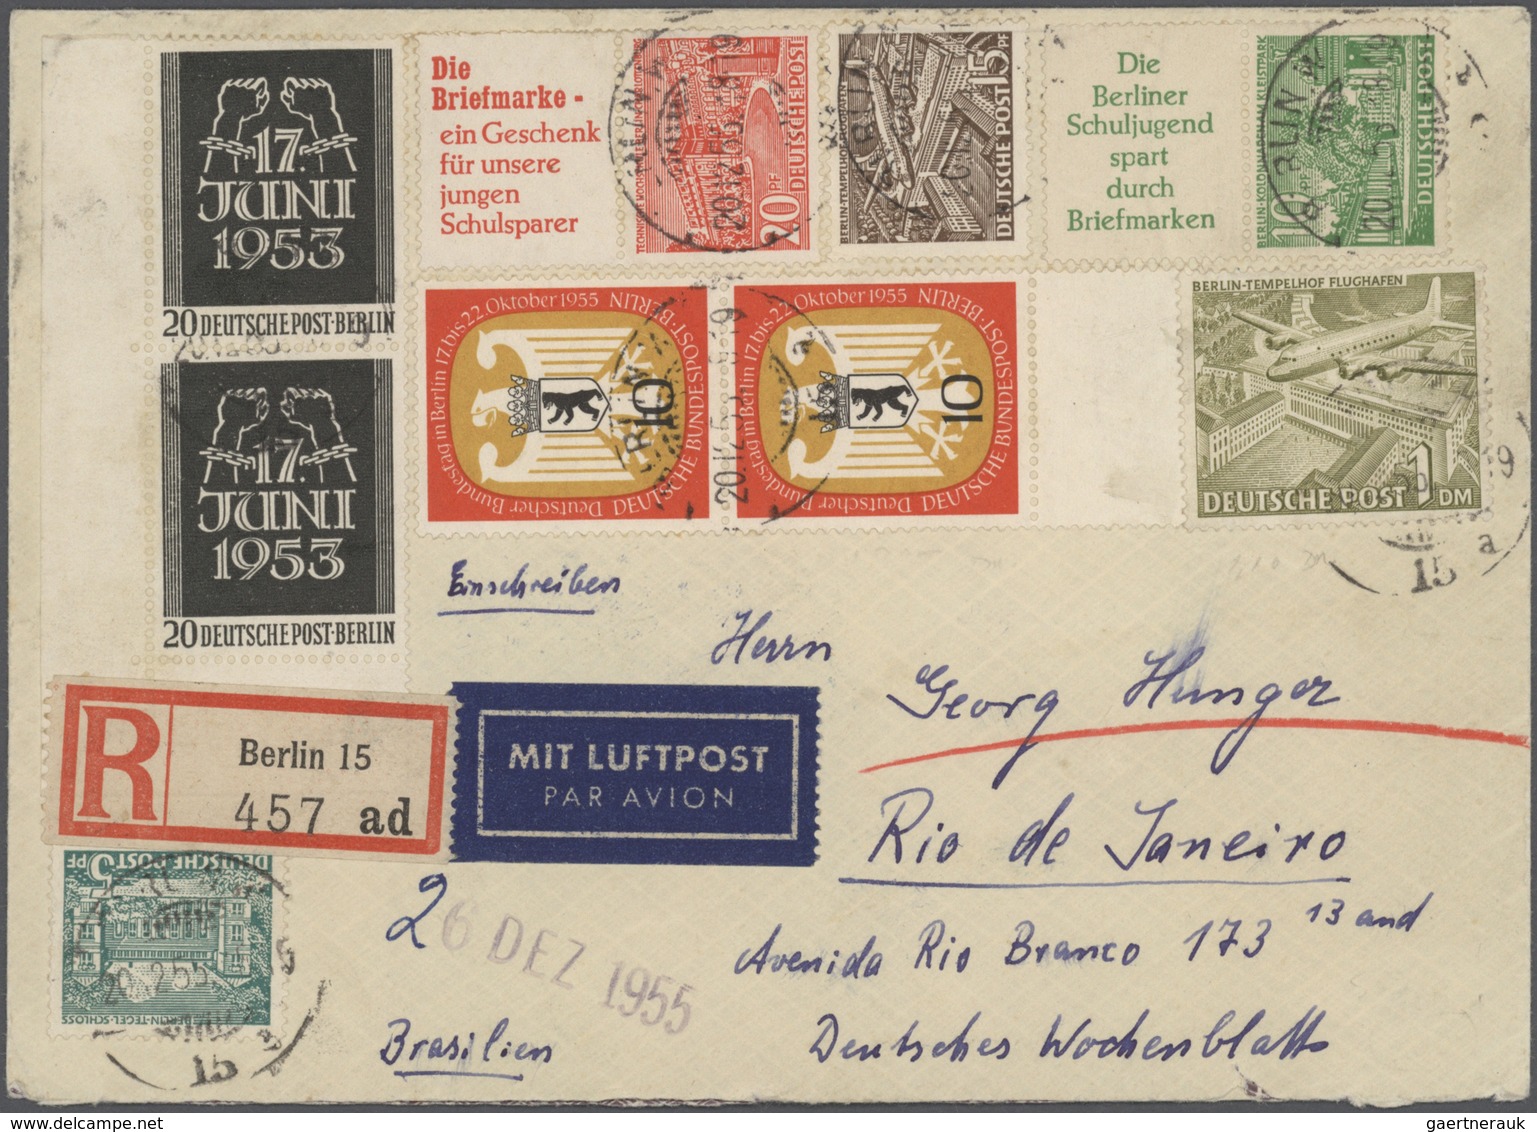 Berlin: 1948-1970, schöne Partie mit rund 75 Briefen und Belegen, dabei Aufdruck-Ausgaben auch in Mi